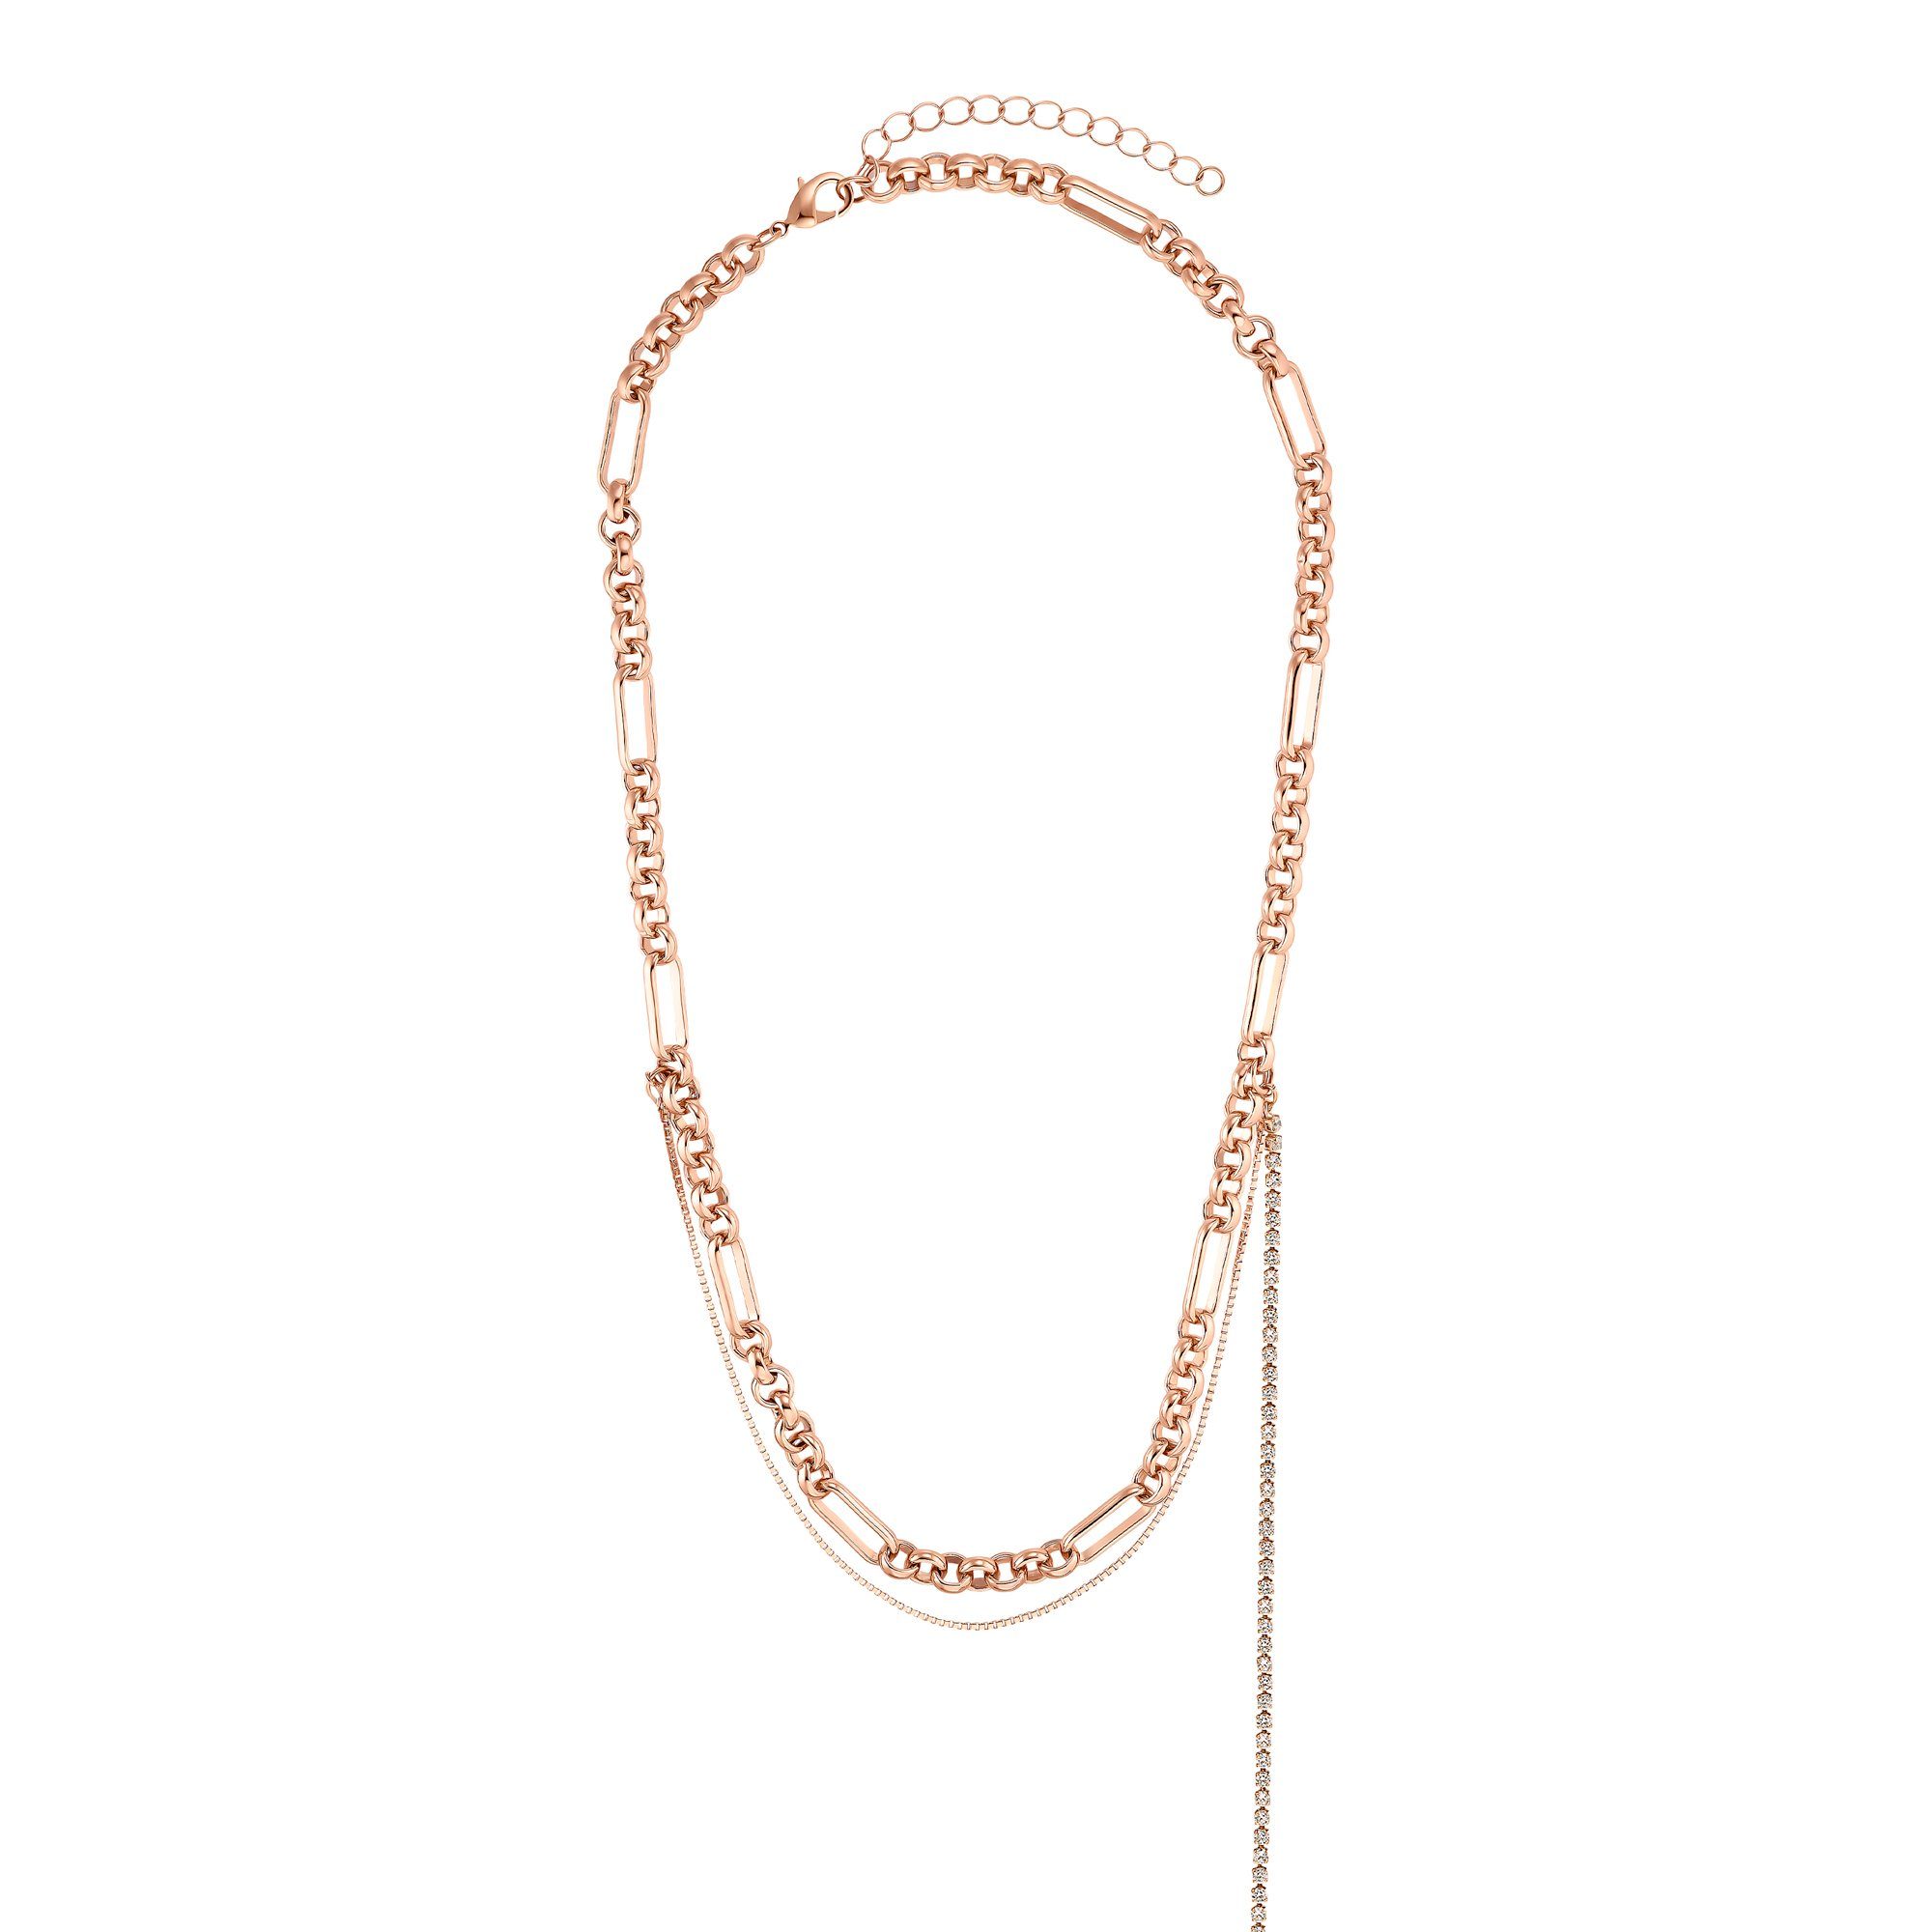 Heideman Collier »Zara rose goldfarbend« (inkl. Geschenkverpackung),  ausgefallene Kette für Frauen